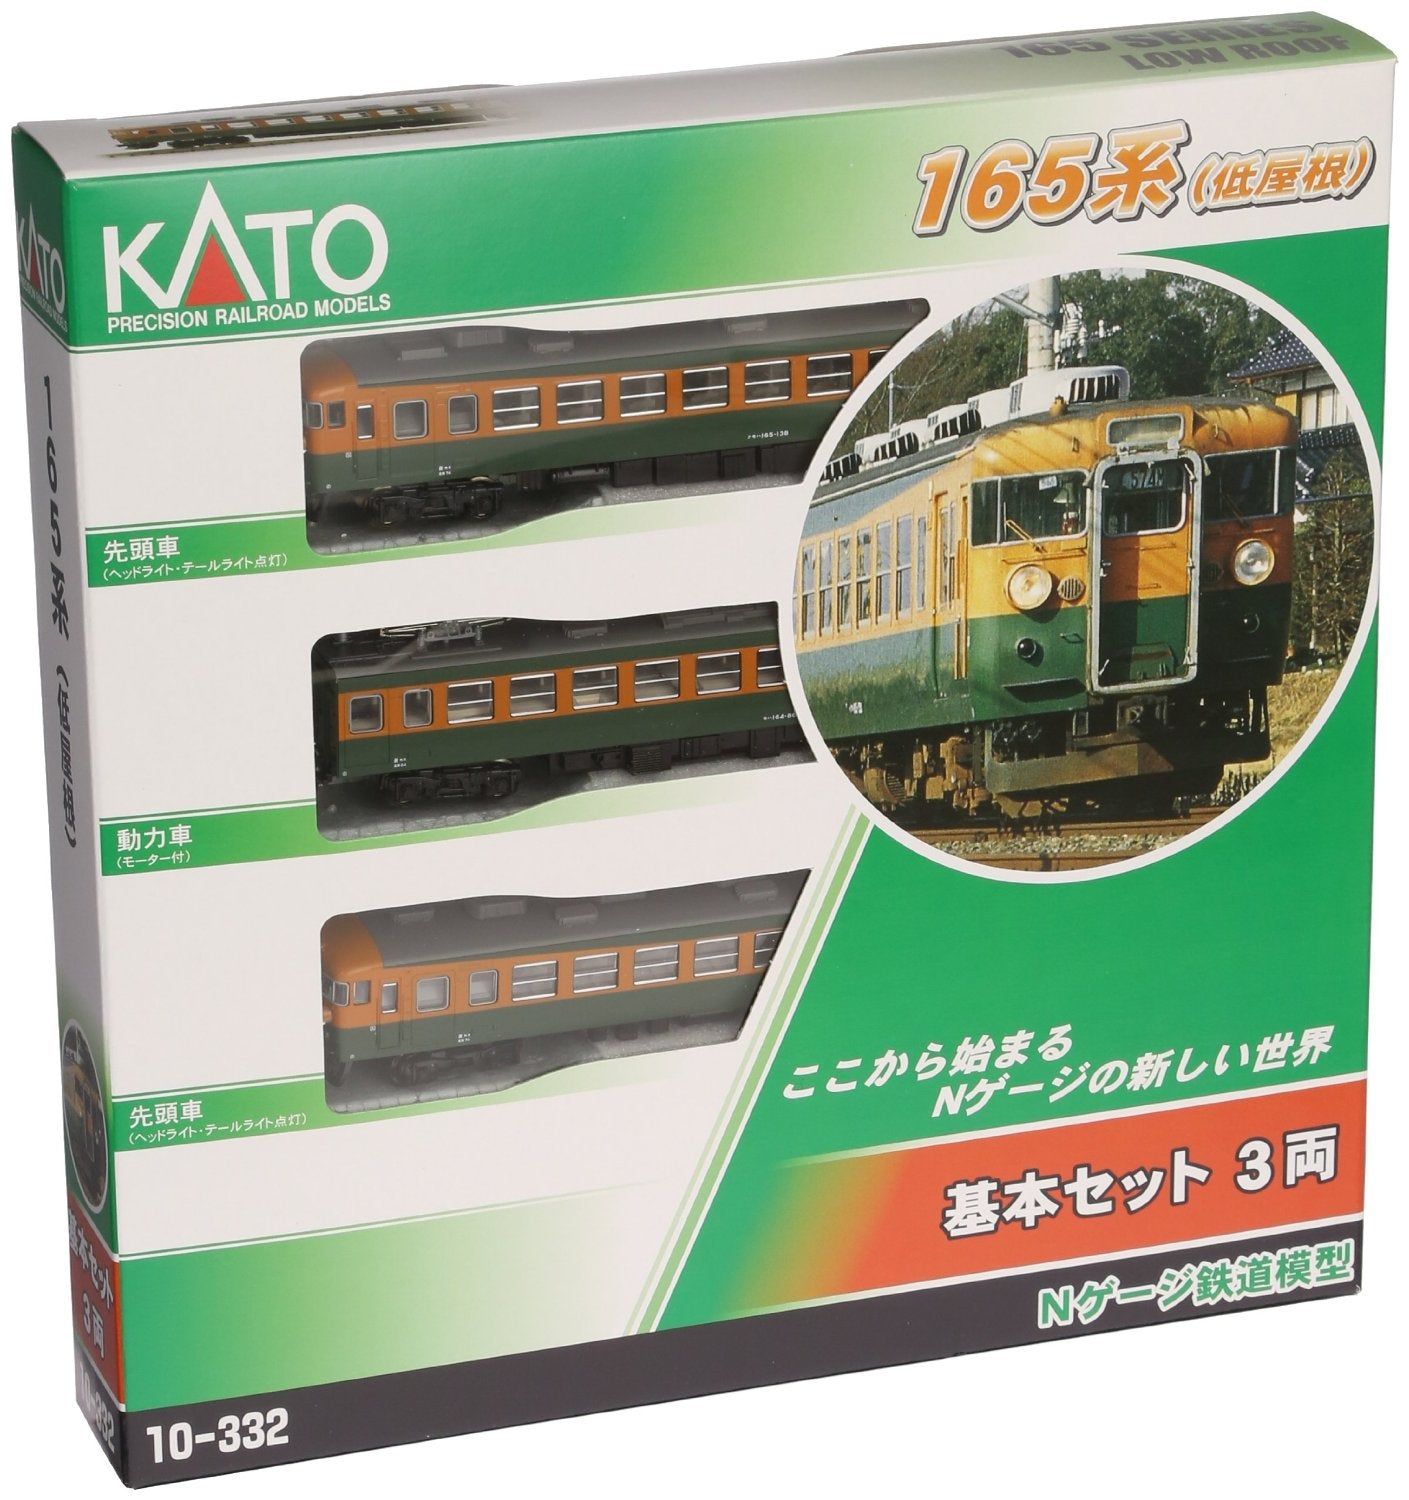 KATO 10-332 Series165 3 Car Set - BanzaiHobby